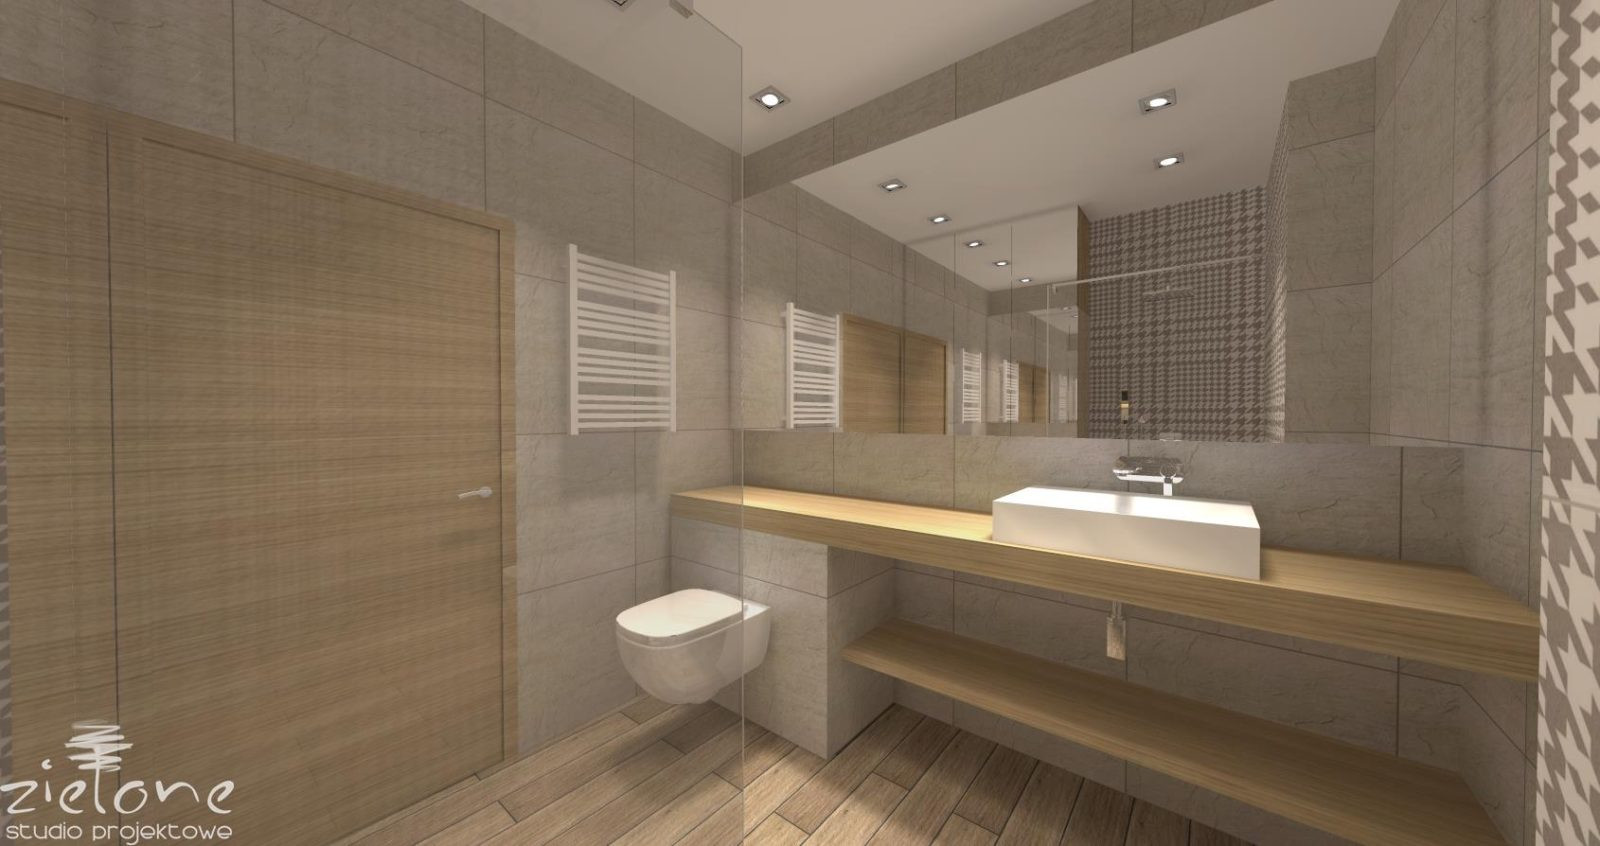 Projekt klasycznej łazienki z białą muszlą wisząca oraz drewnianym blatem